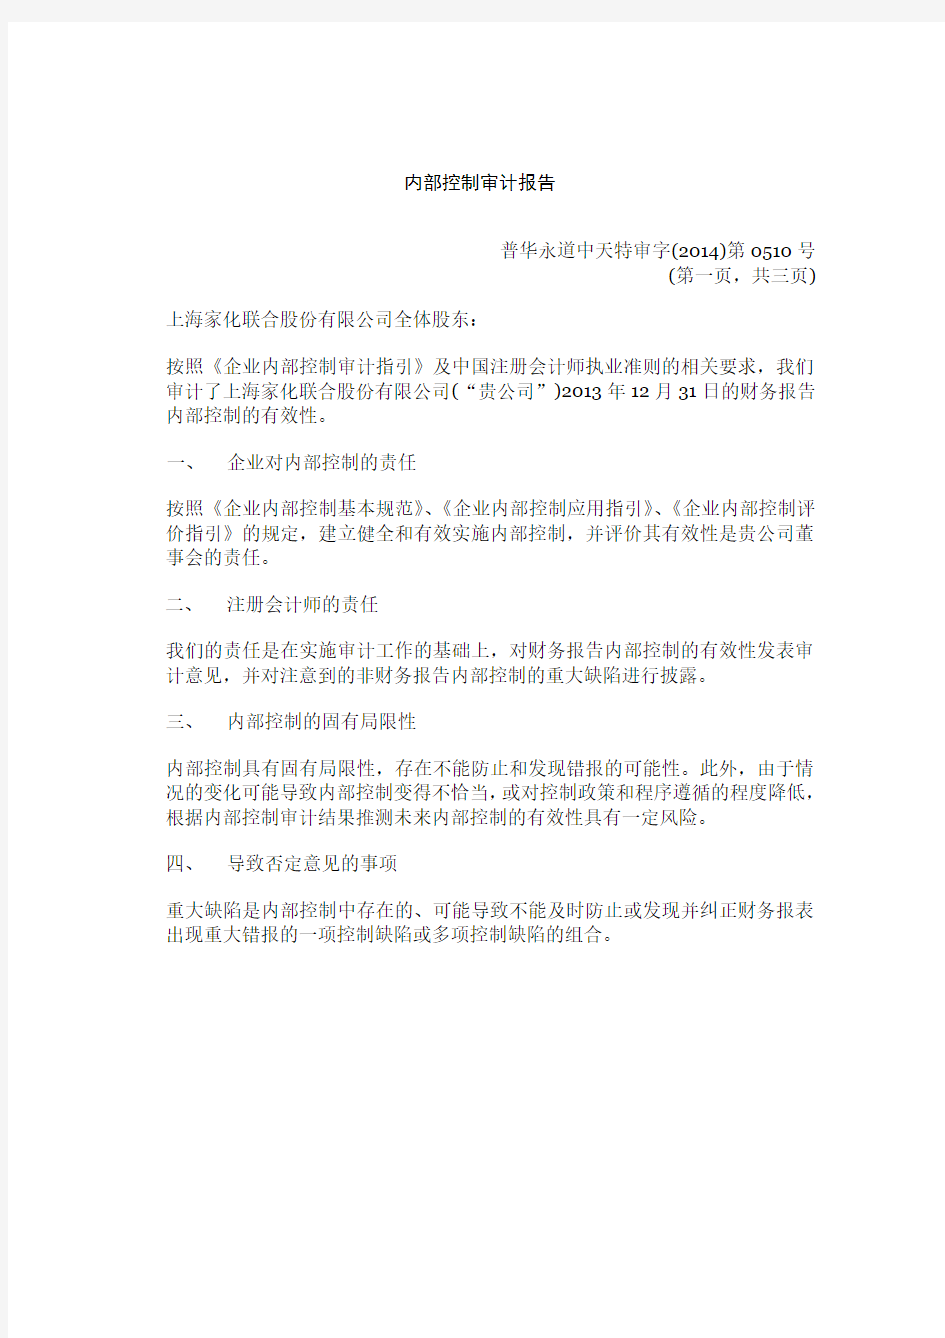 上海家化内部控制审计报告(普华永道)